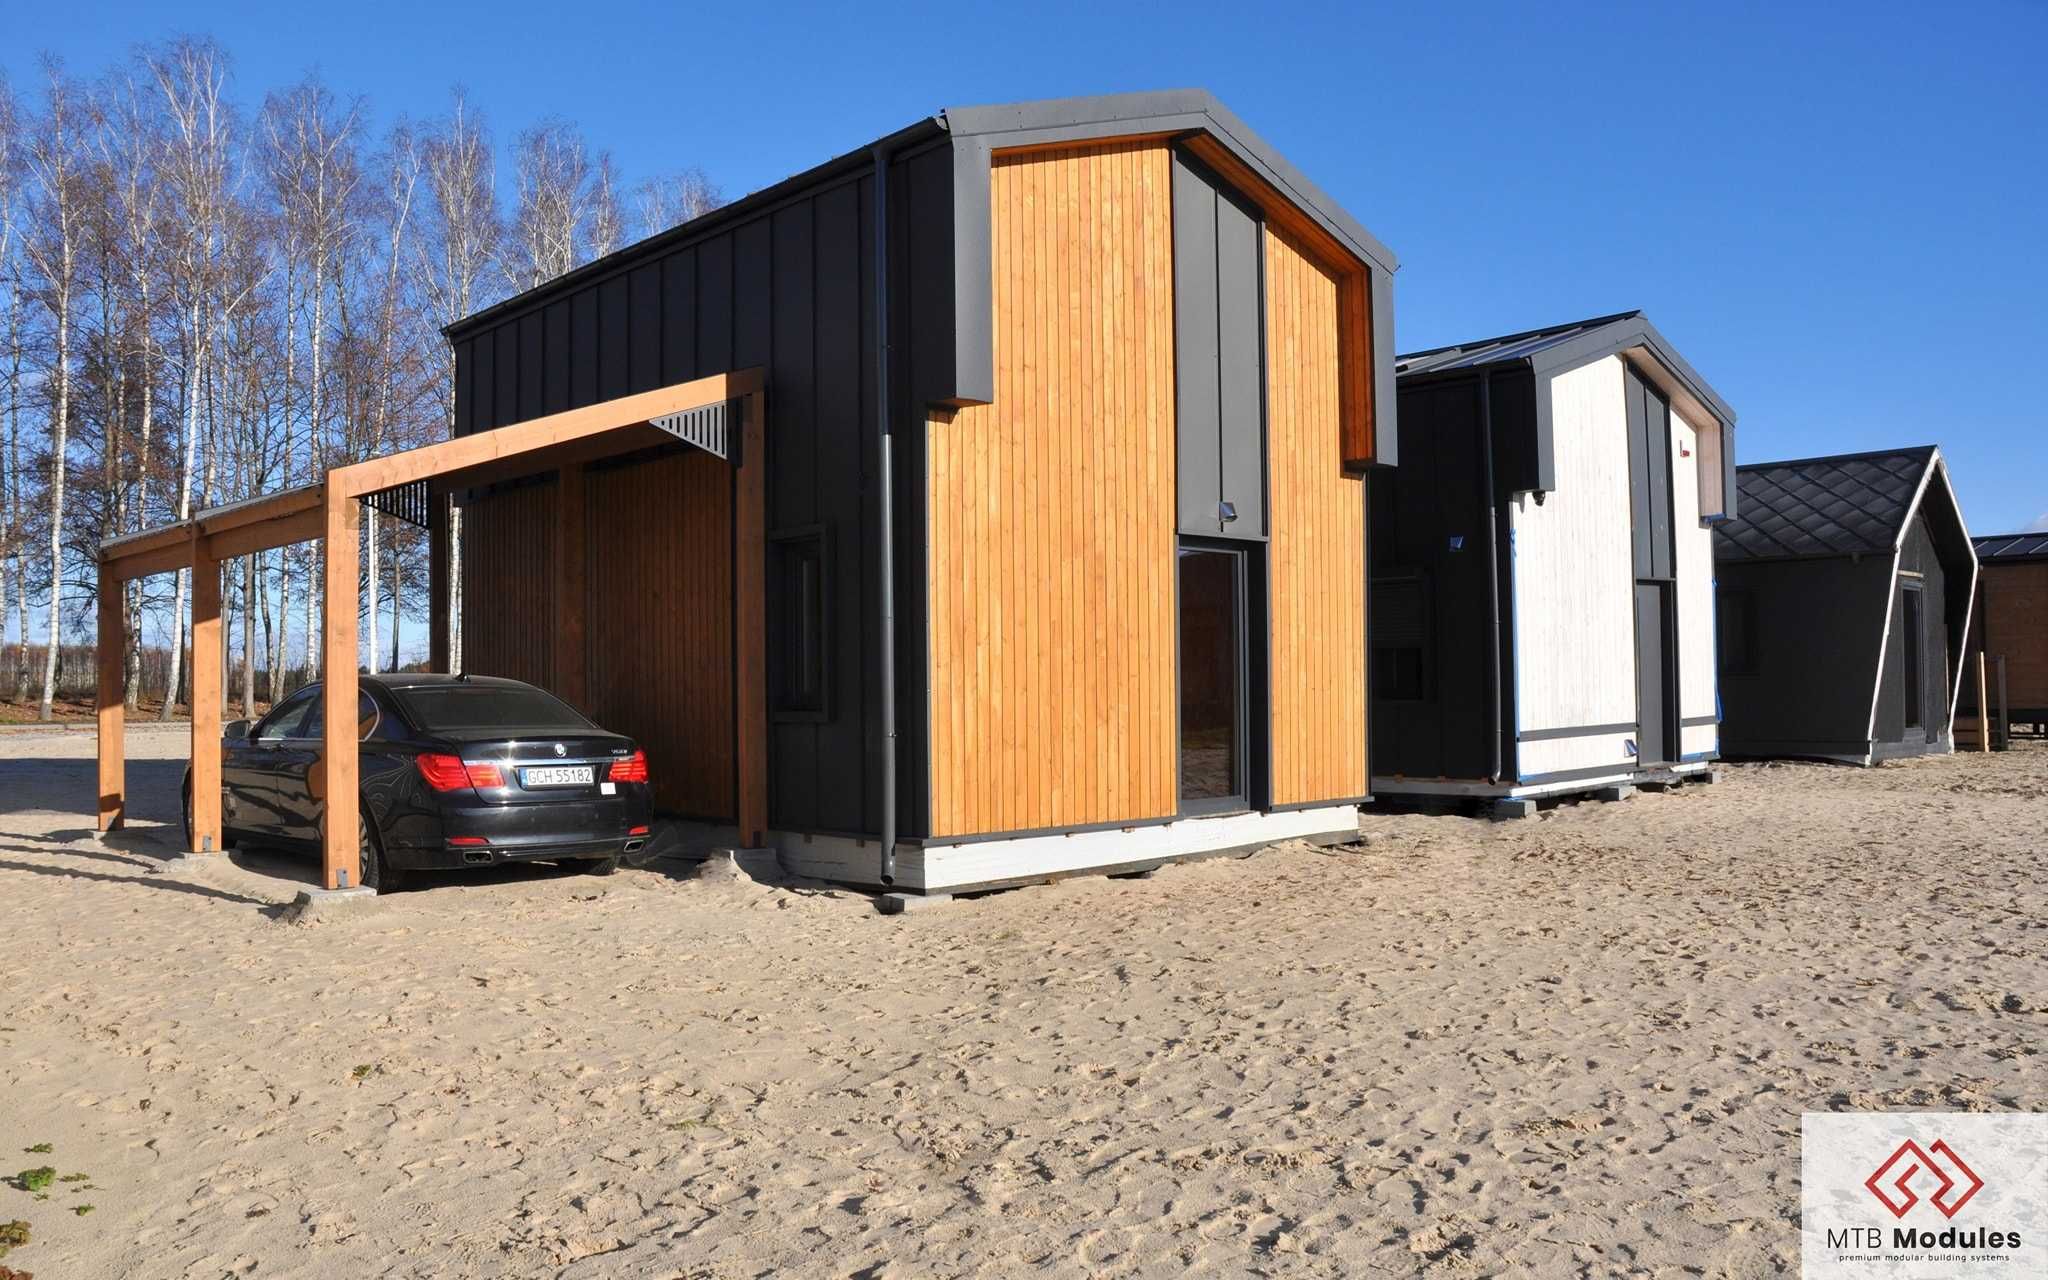 Dom dla rodziny 2+2 całoroczny 70m2 energooszczędny drewniany MTB FOUR